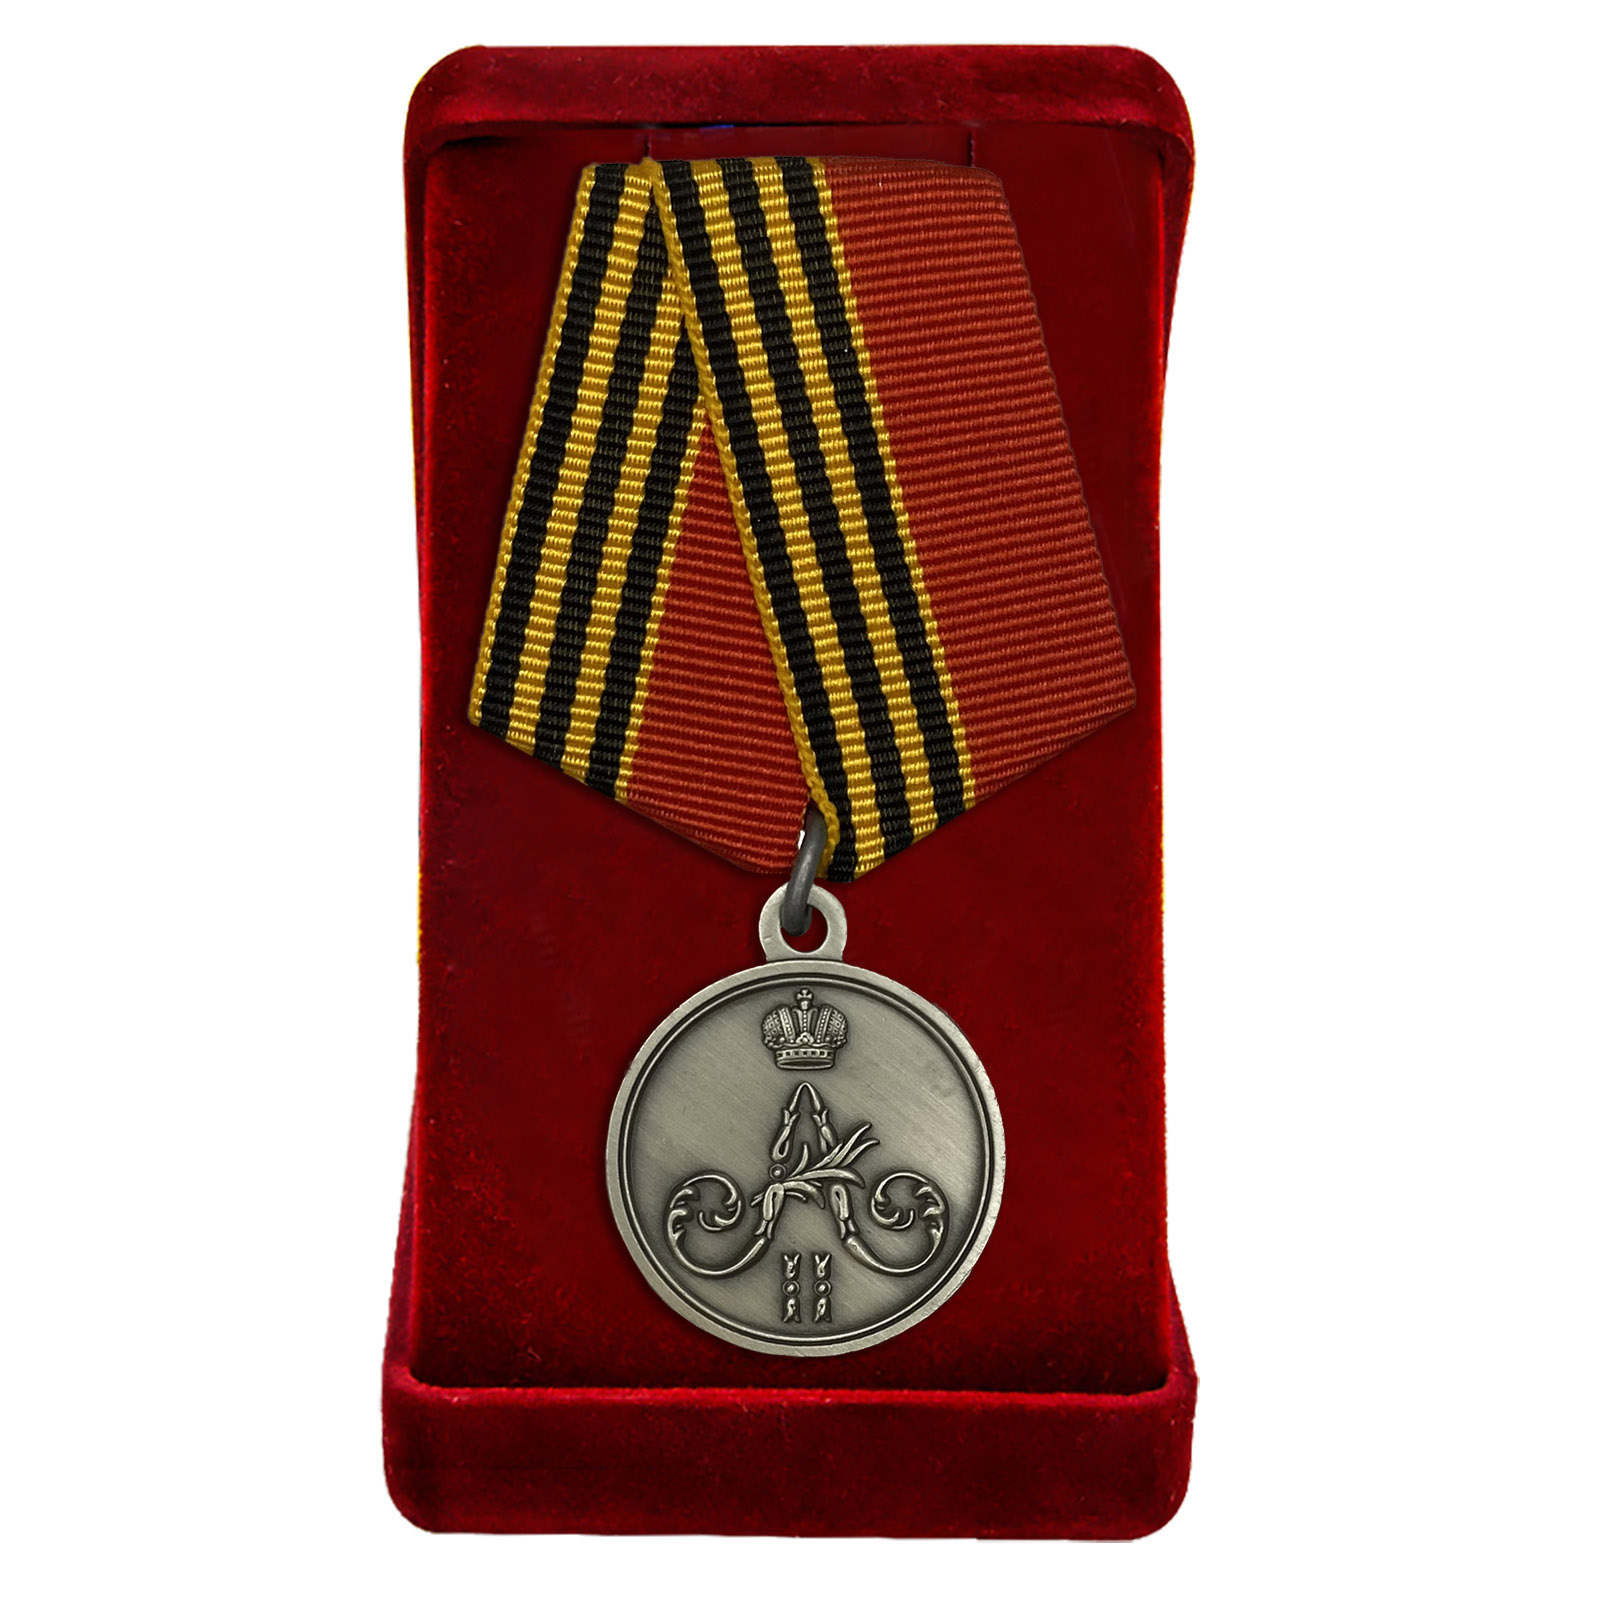 Купить памятную медаль За покорение Чечни и Дагестана в подарок